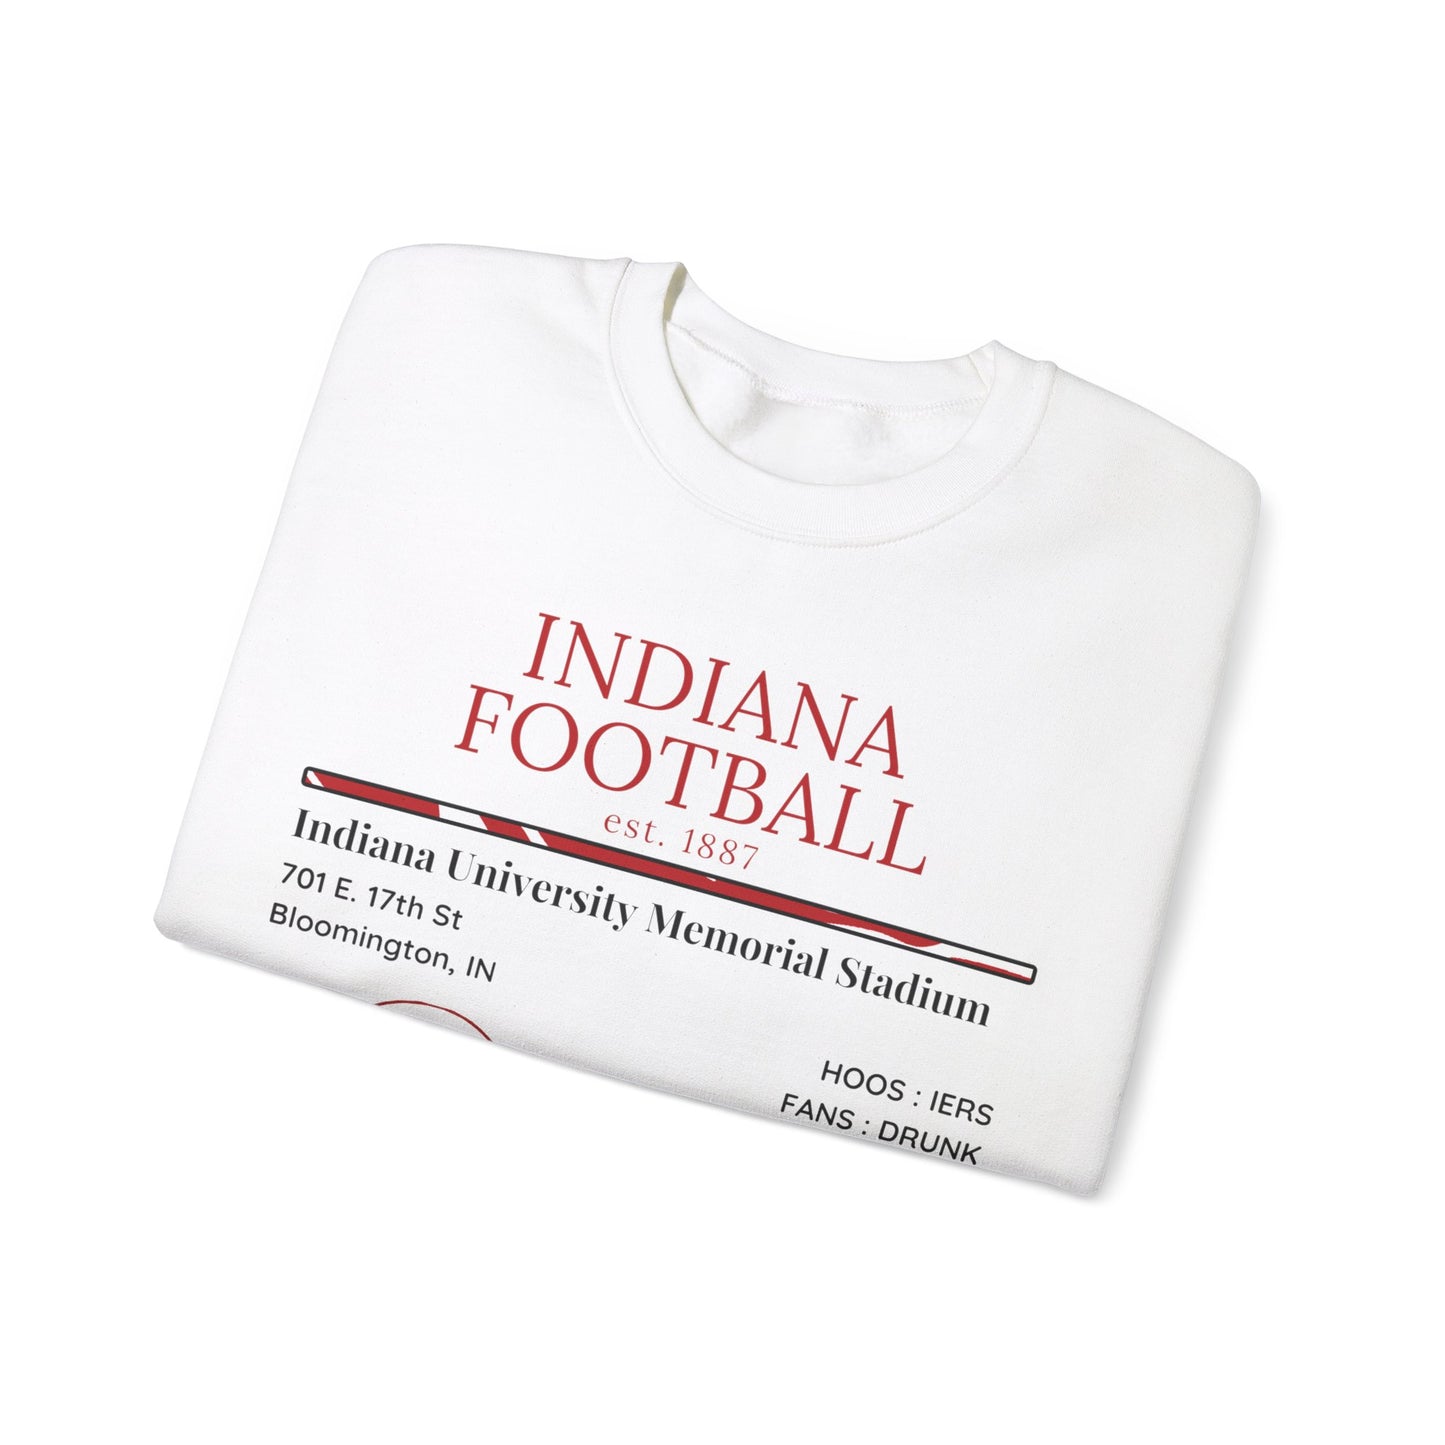 Indiana Football Sweatshirt